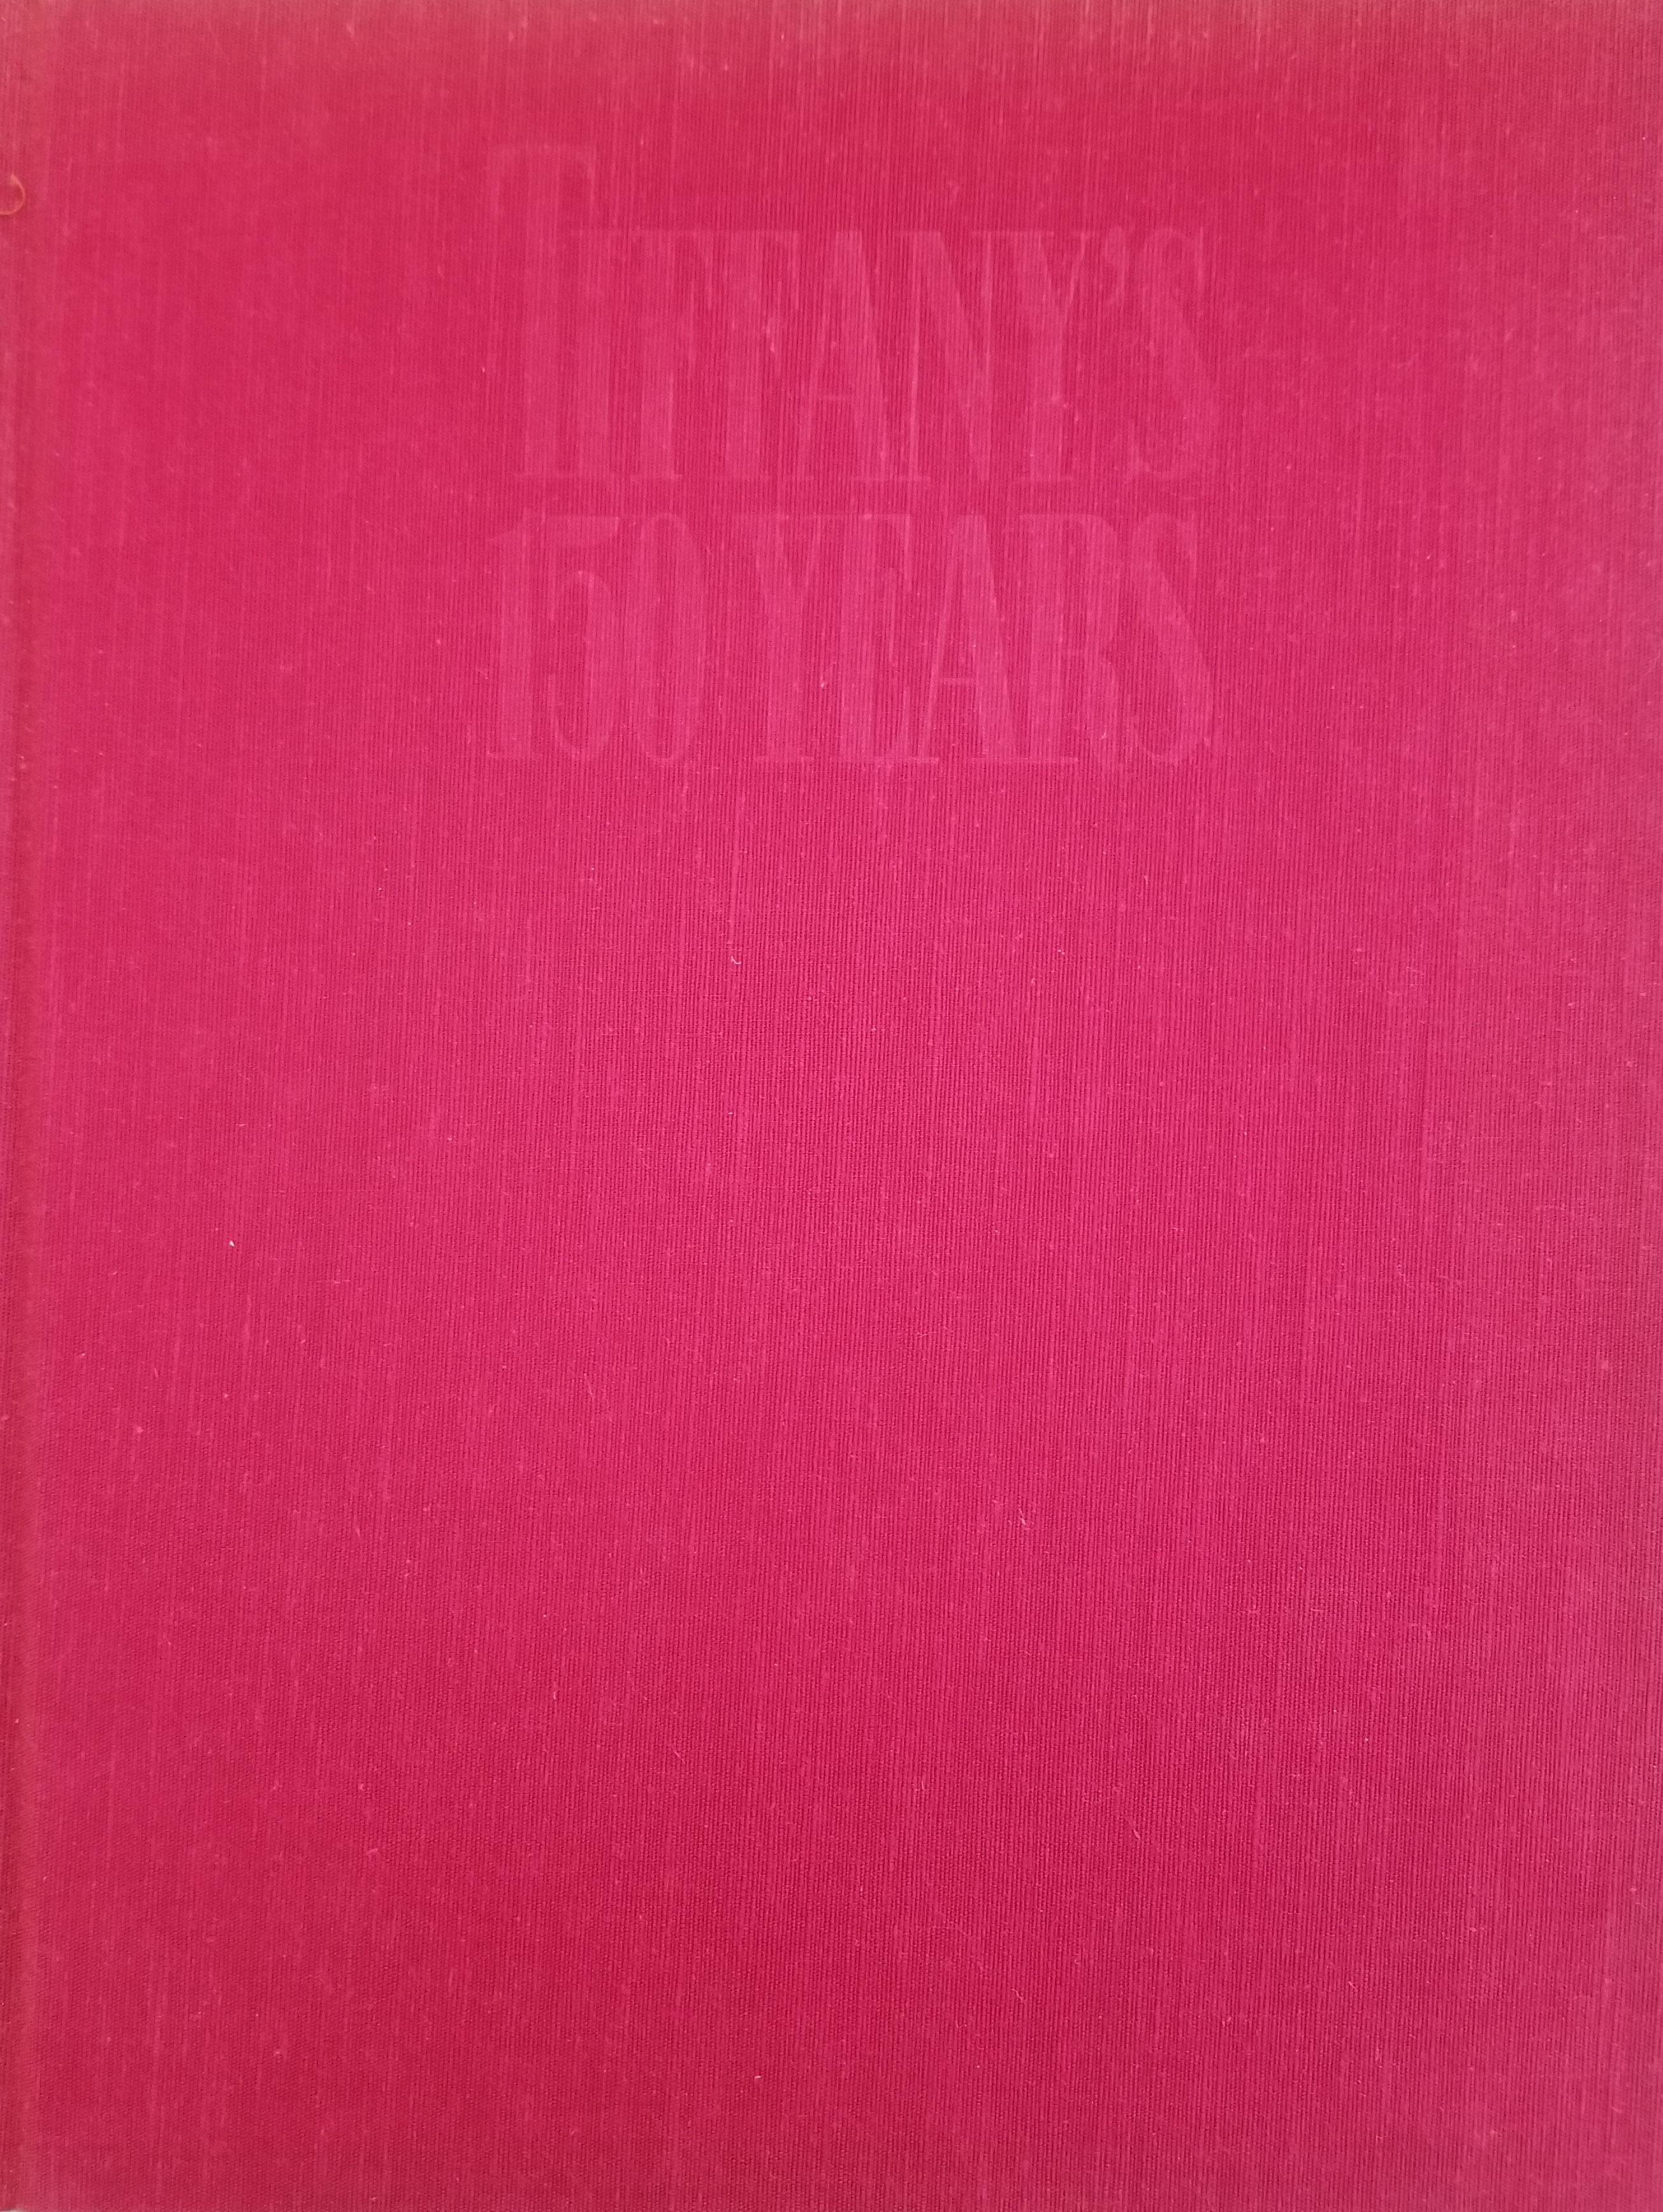 Les 150 ans de Tiffany par John Loring. Première édition, publiée en 1987 par Doubleday & Company Inc. de Garden City, New York. Couverture rigide, 192 pages.